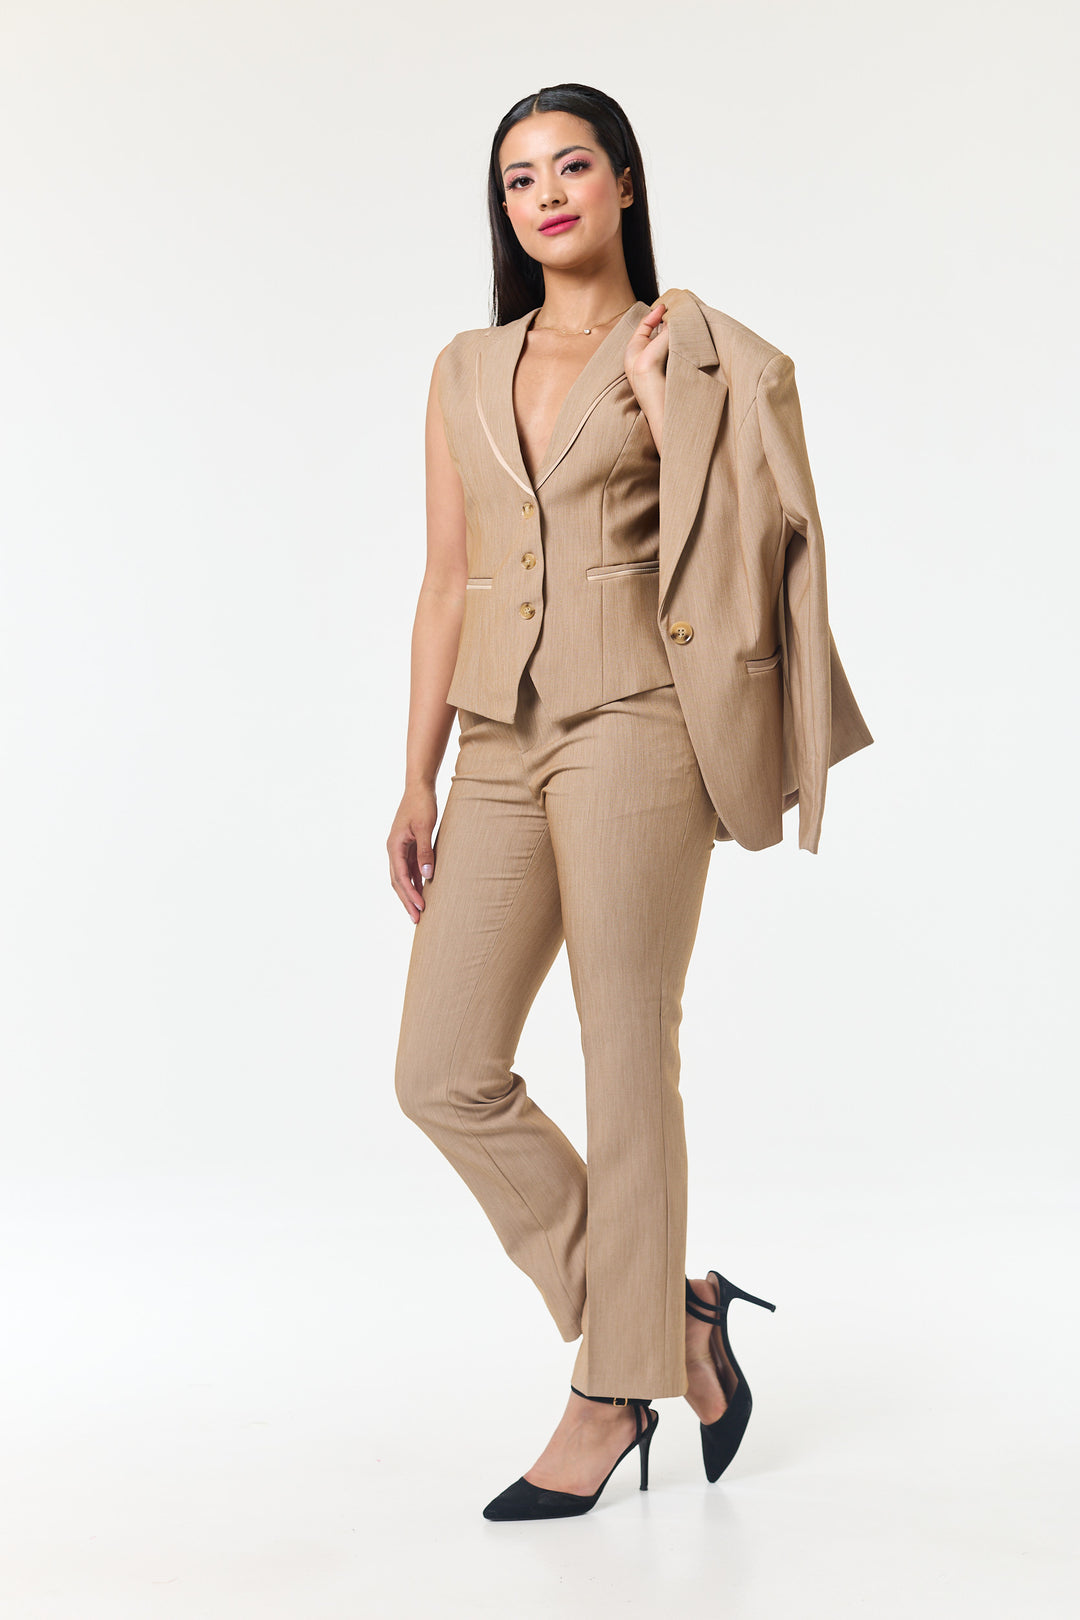 Beige 3-Piece Trouser Suit - Shop Women's Business Suits